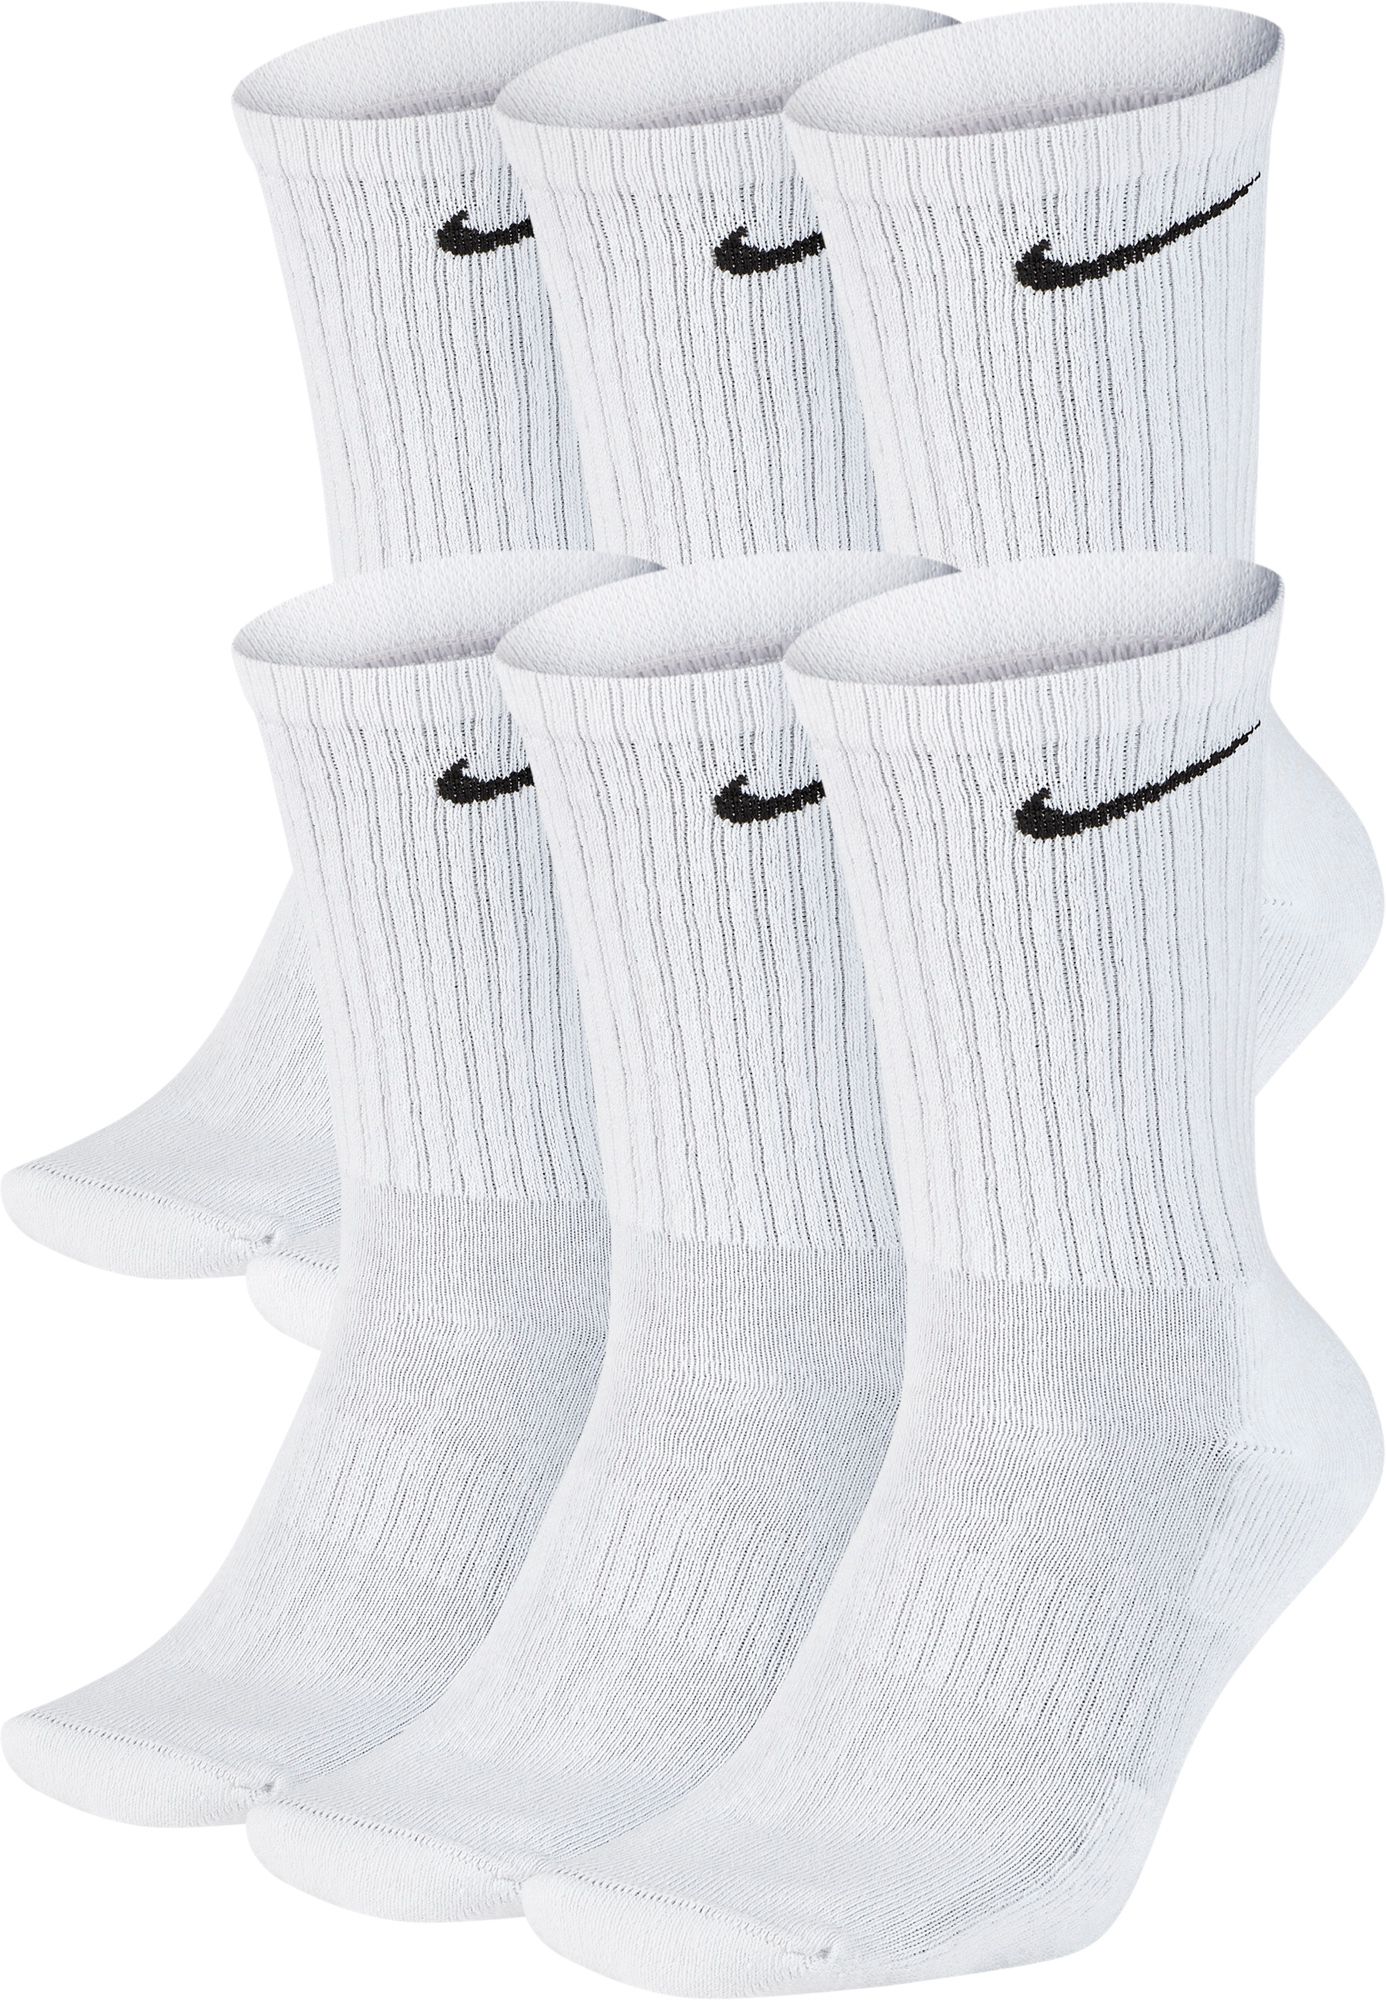 white nike socks high